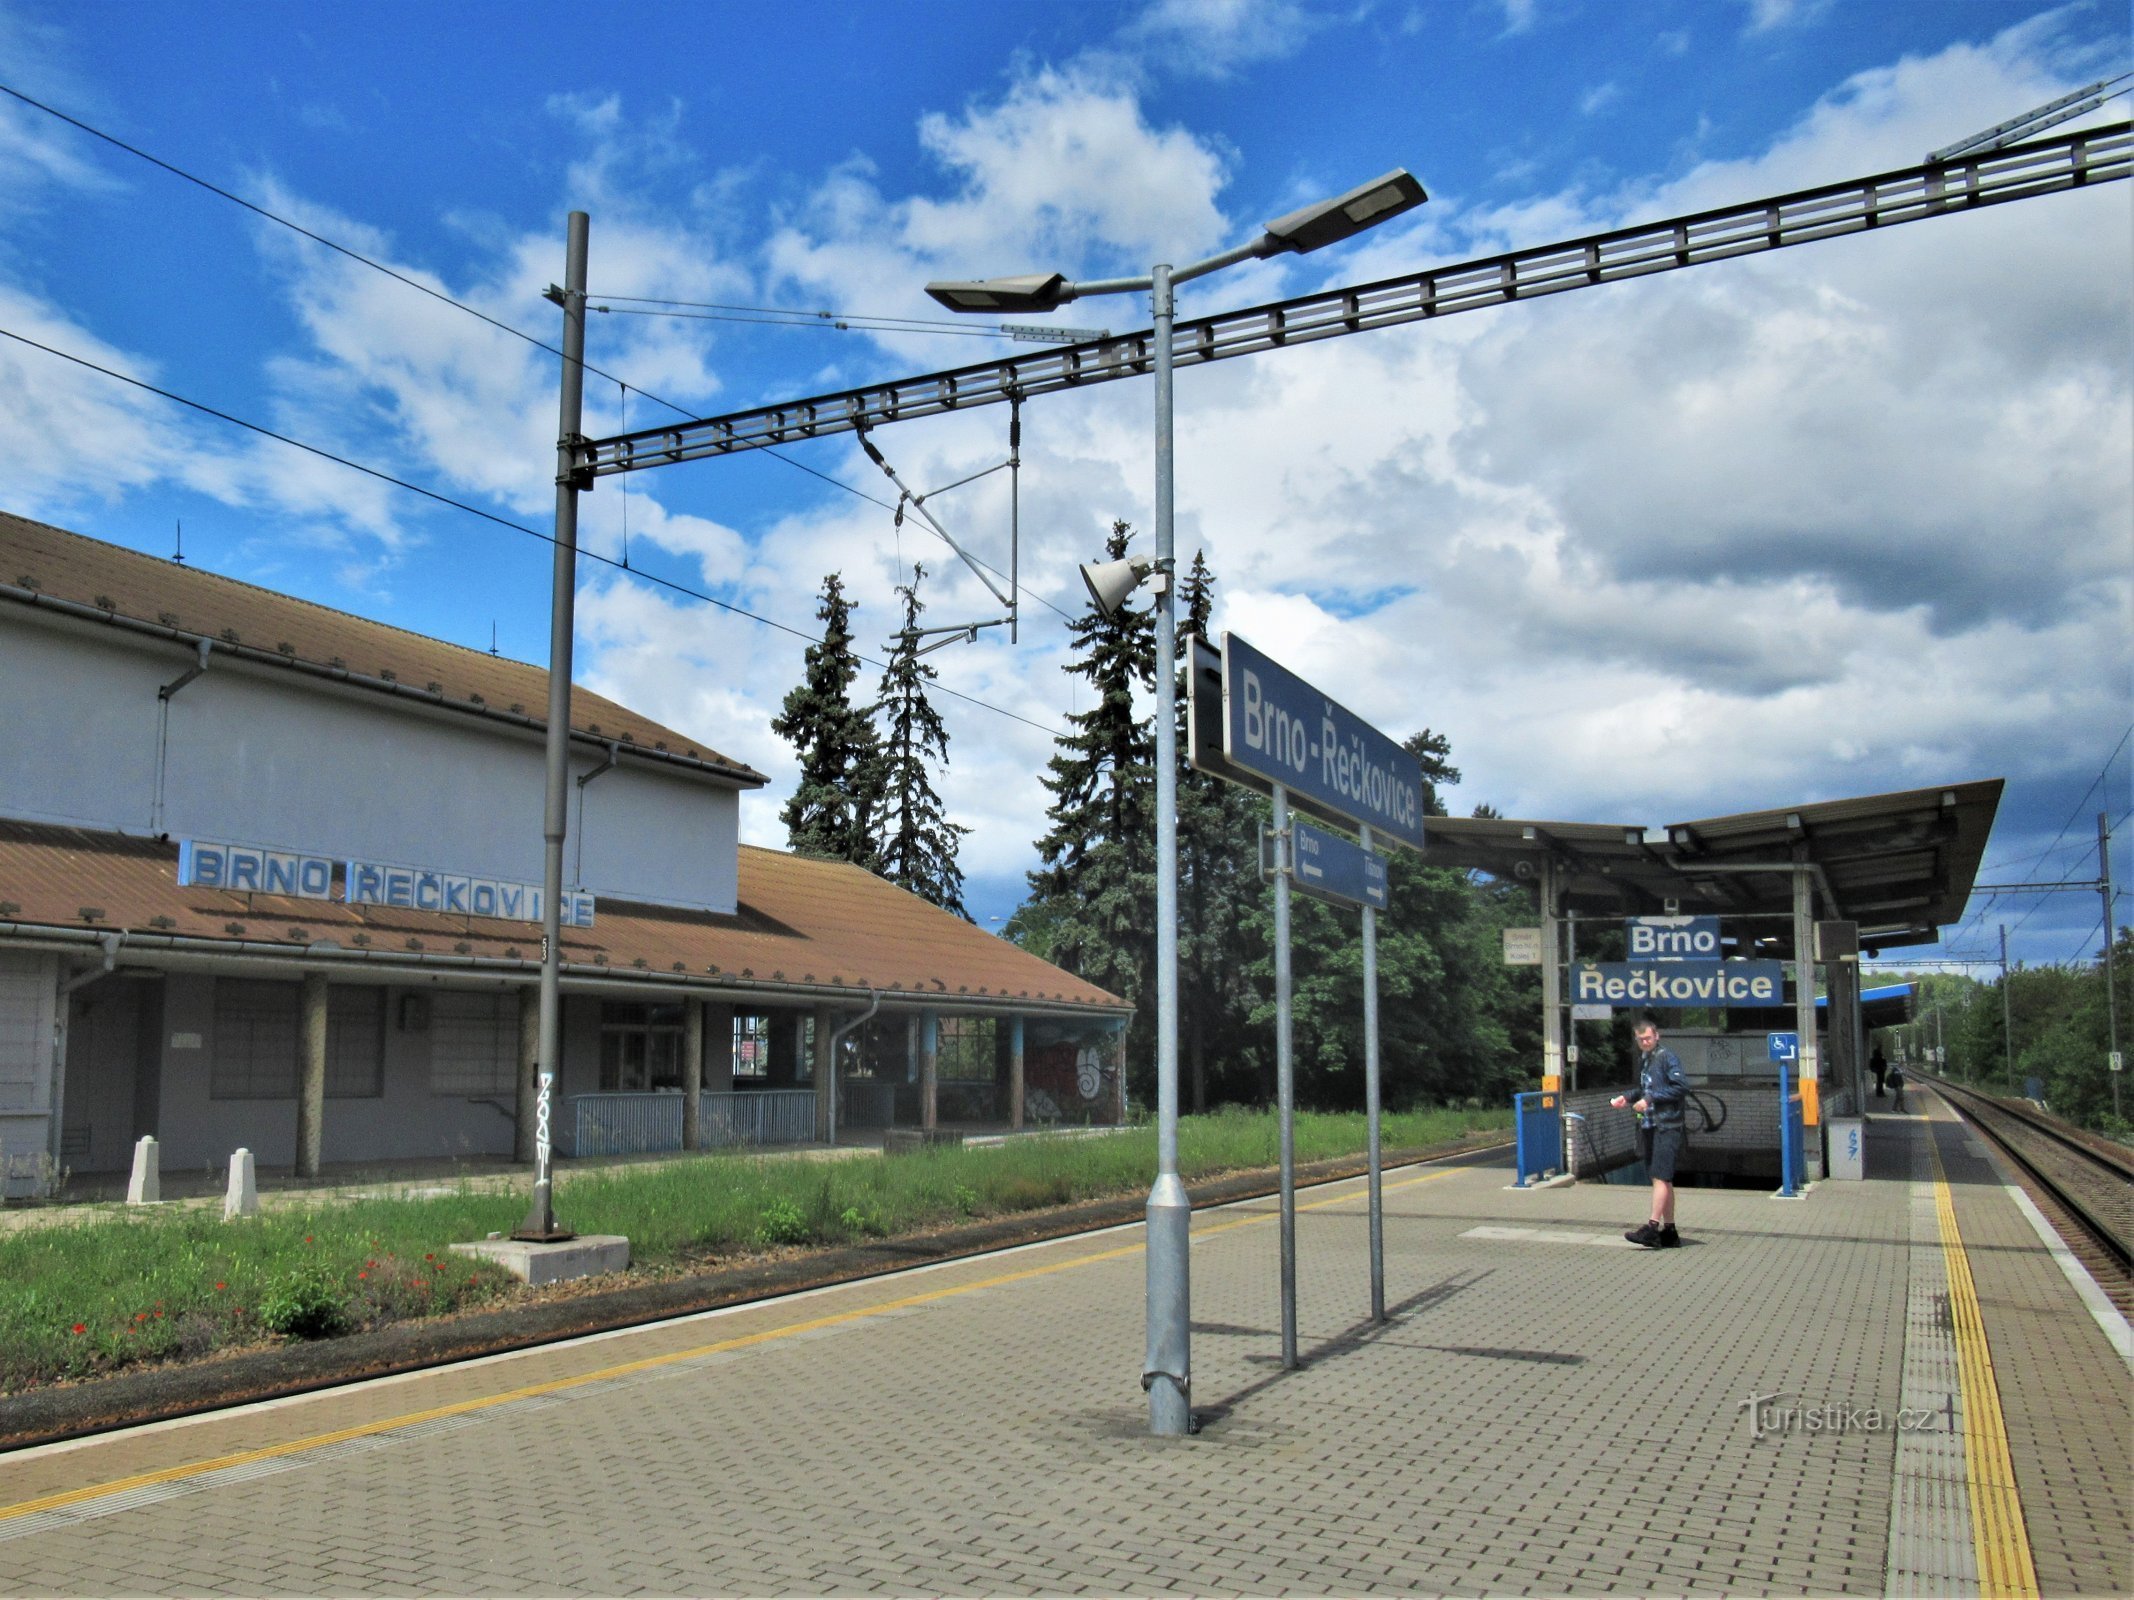 Railway station in Brno-Řečkovice